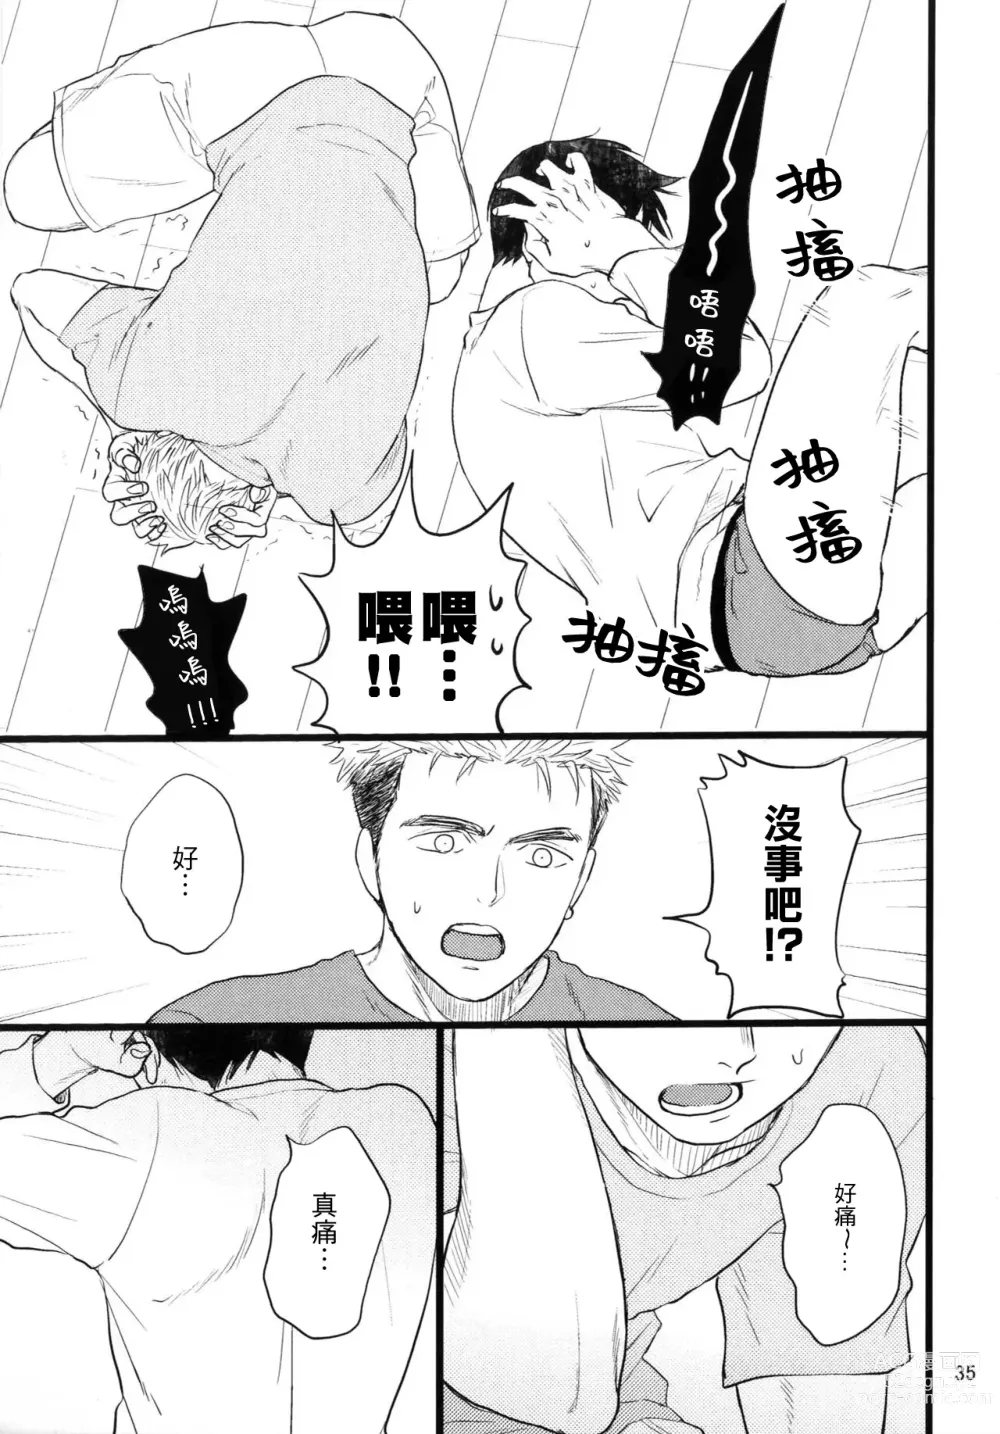 Page 33 of doujinshi Umi ga Nakano de Nakano ga Umi de